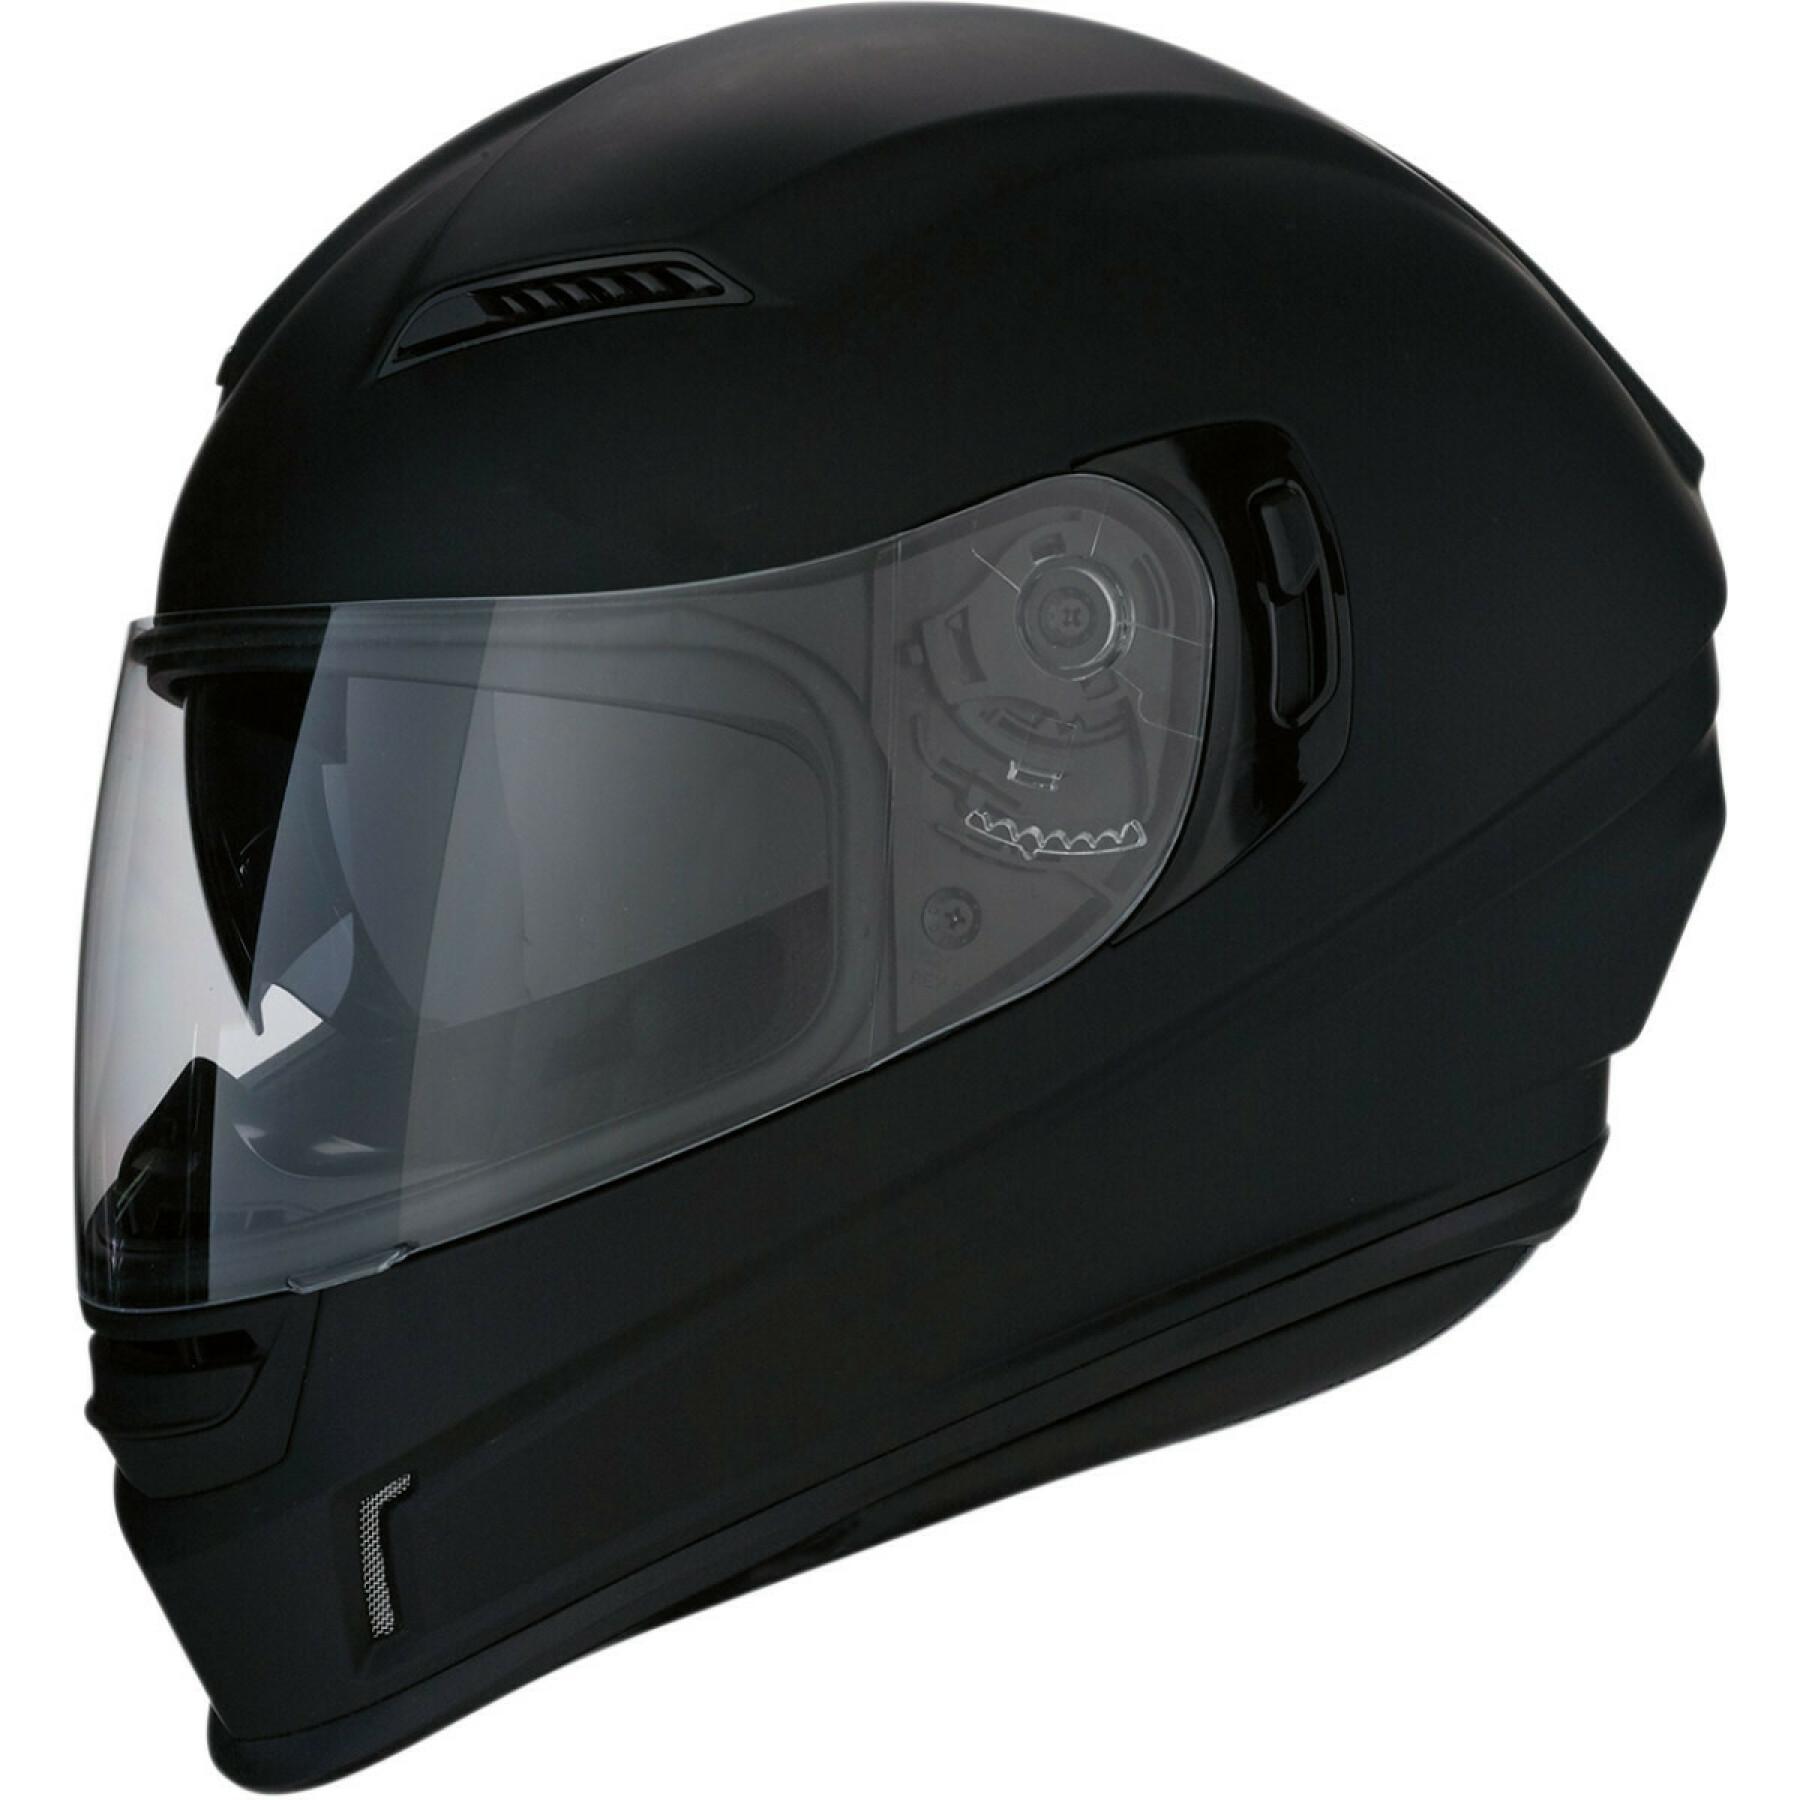 Full face motorcycle helmet Z1R jackal flt black